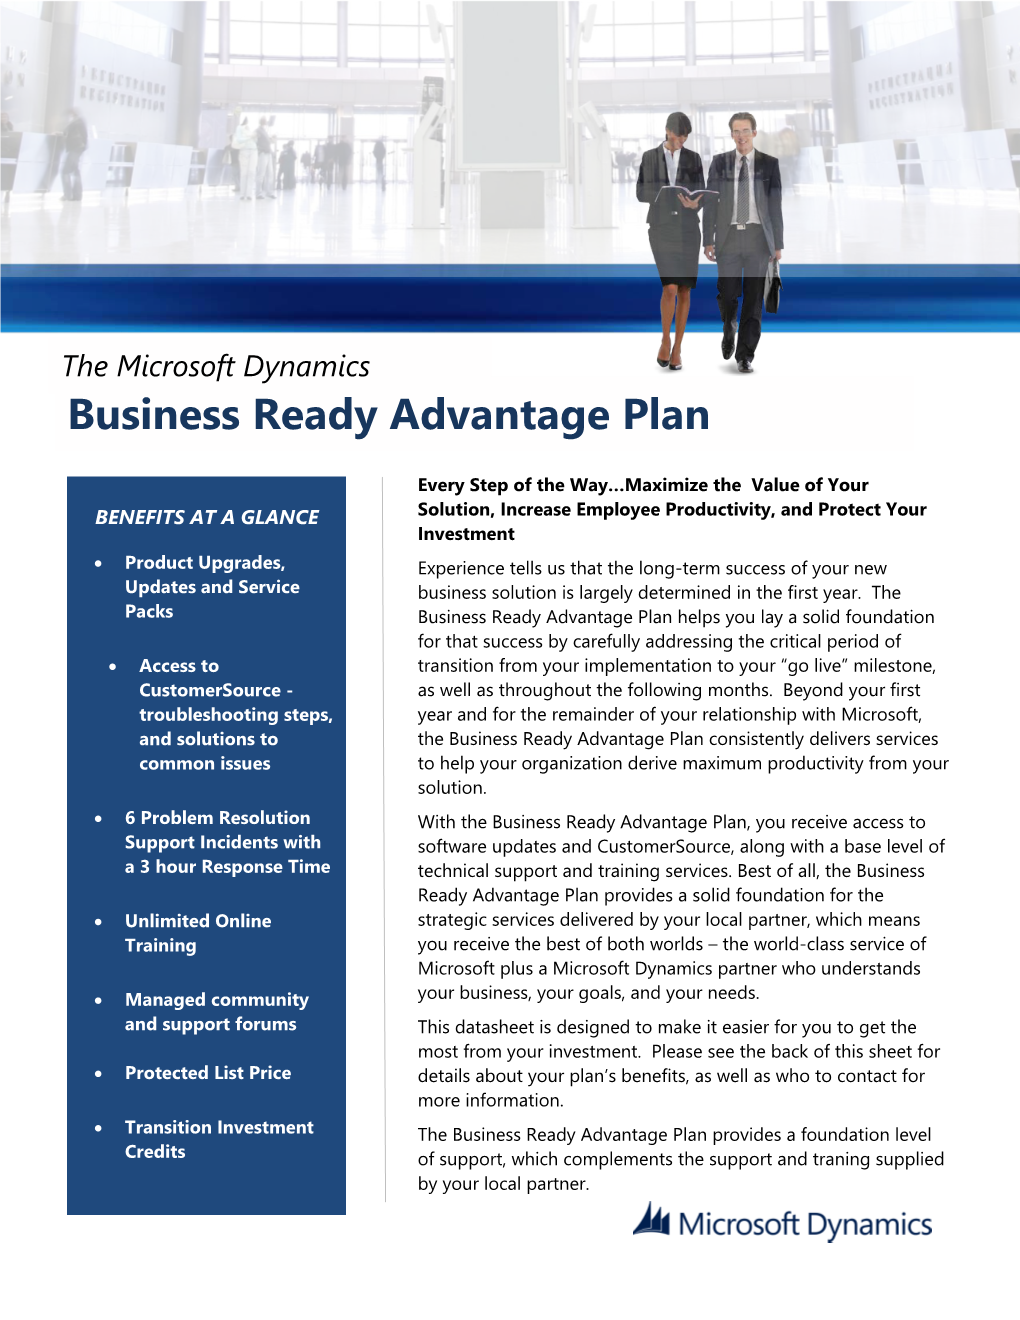 The Microsoft Dynamics Business Ready Advantage Plan